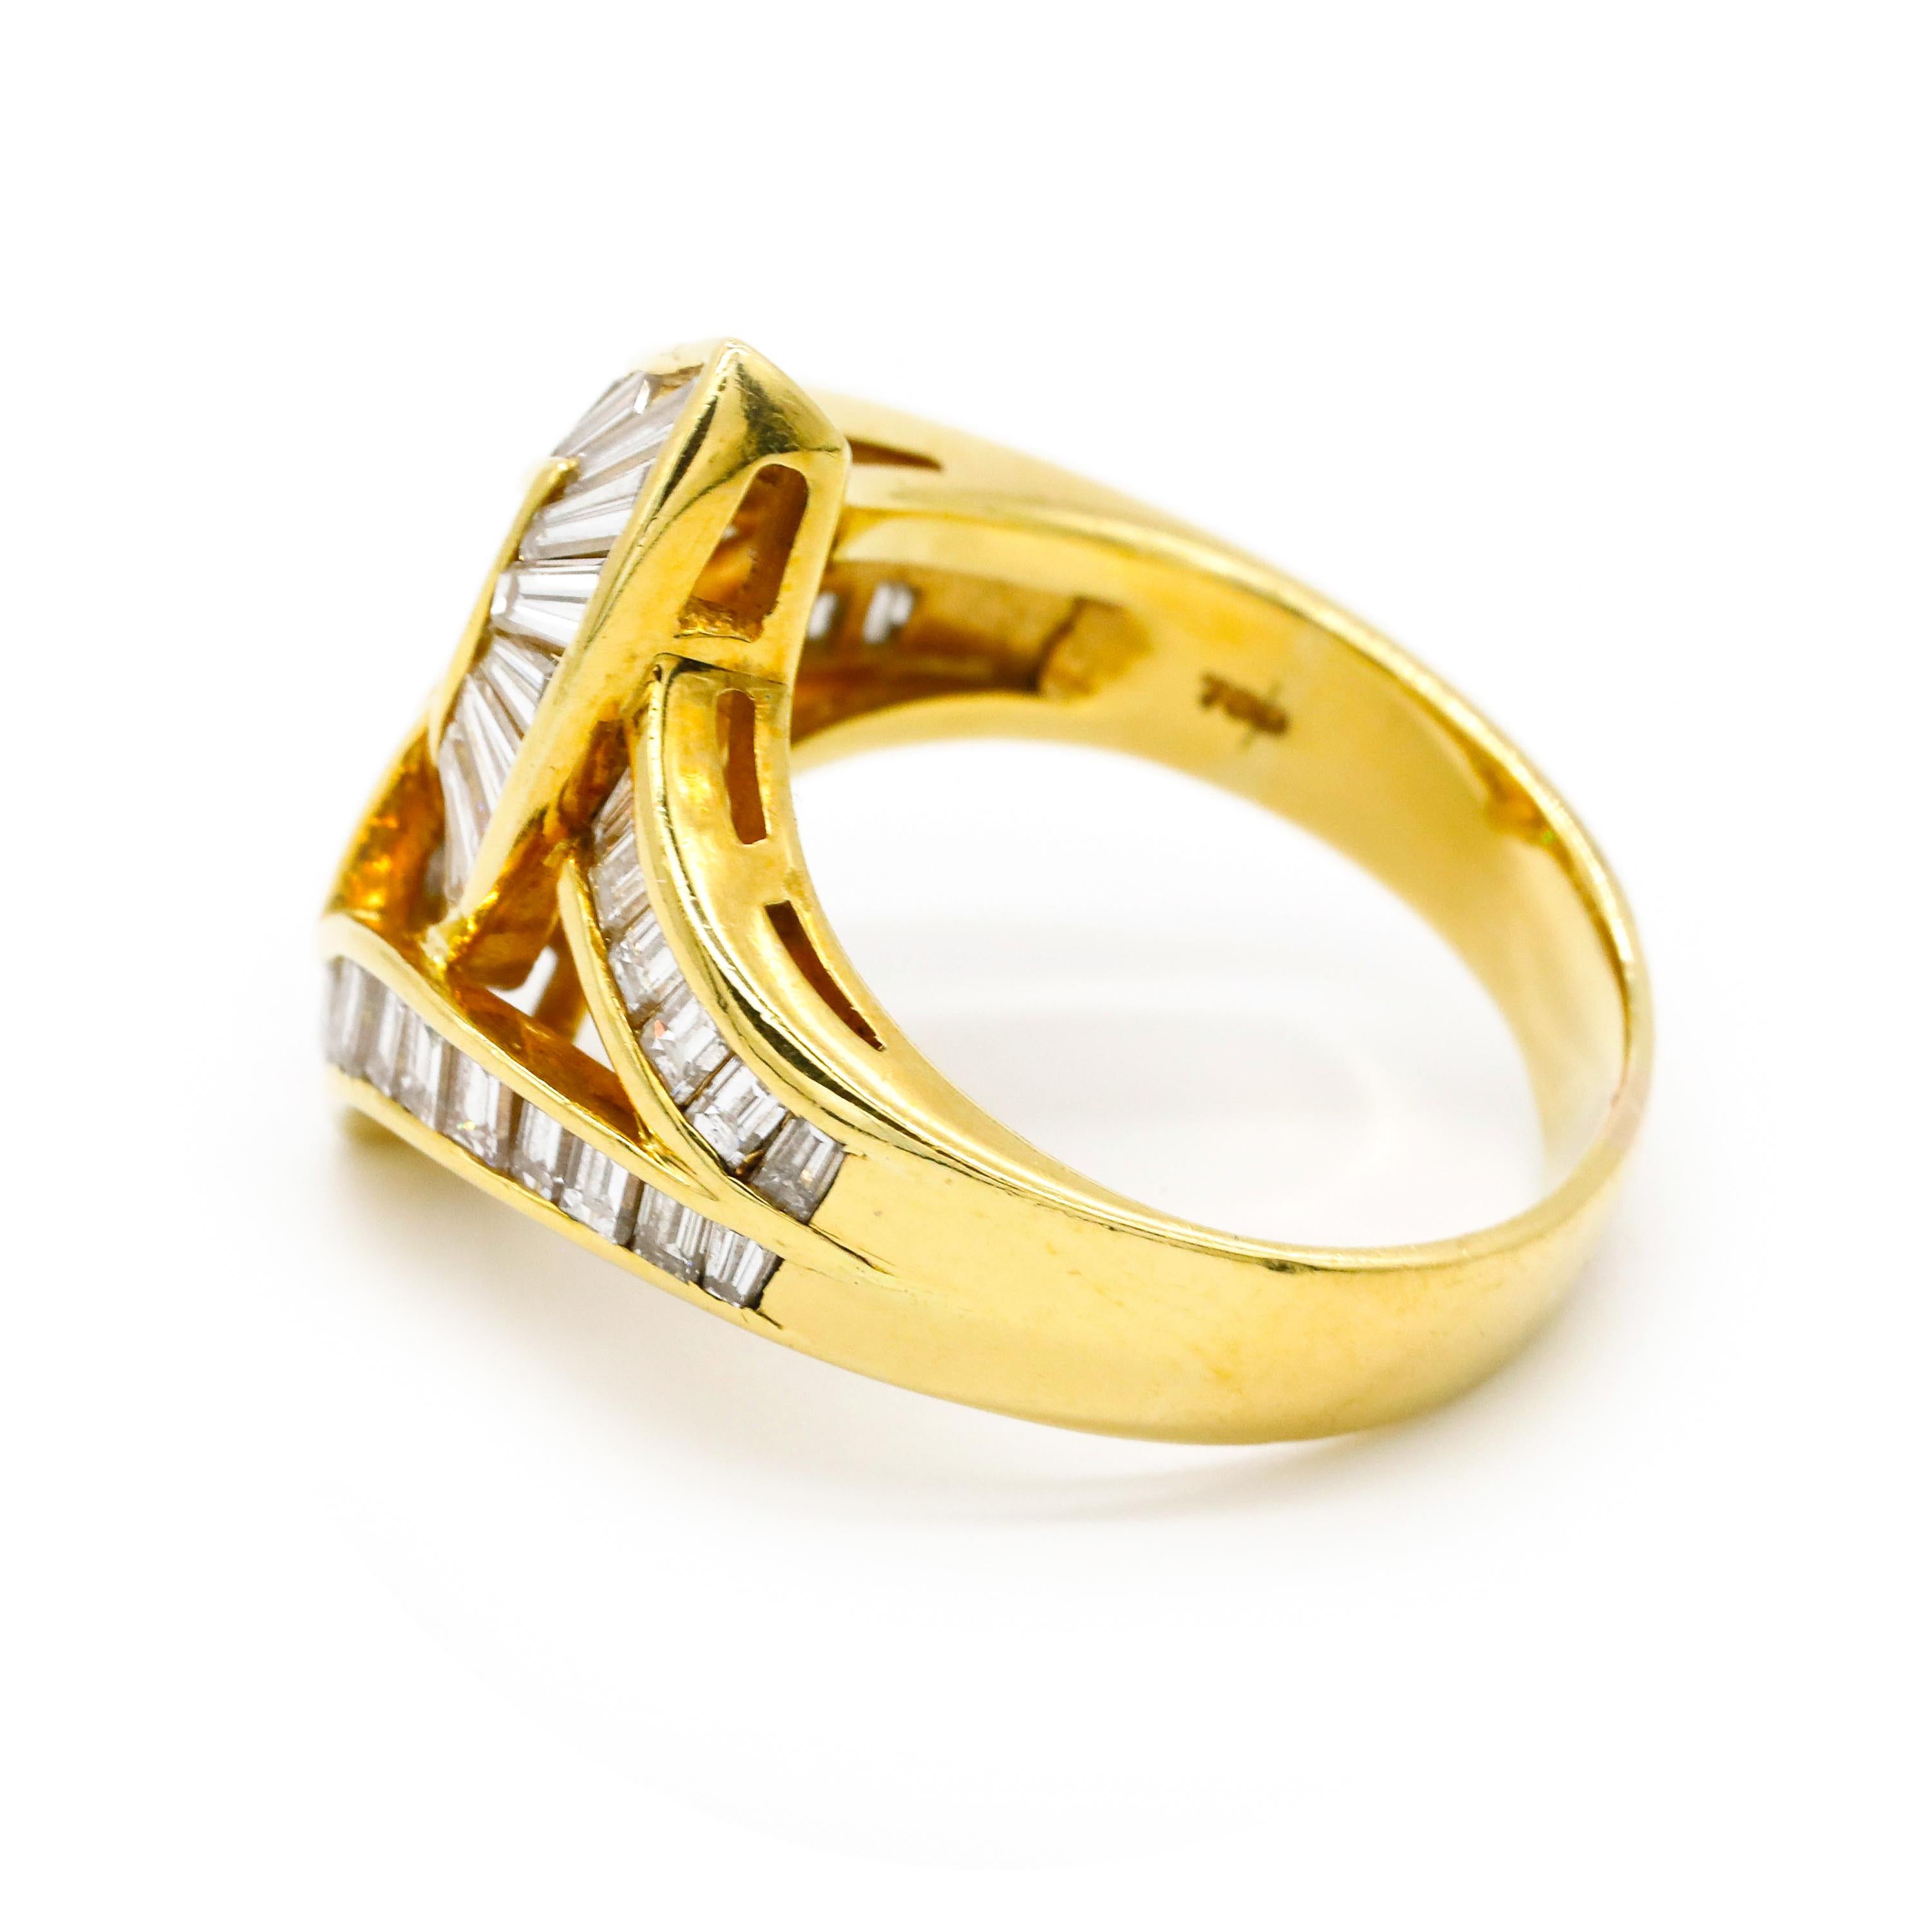 2,20 TCW Baguetteschliff Diamant Fine Estate Verlobungsring 18k Gelbgold

Sie wird von Emotionen überwältigt sein, wenn sie diesen Ring sieht. 2,20 TCW Diamantring im Baguetteschliff, umrahmt von weißen Diamanten im Baguetteschliff, für einen